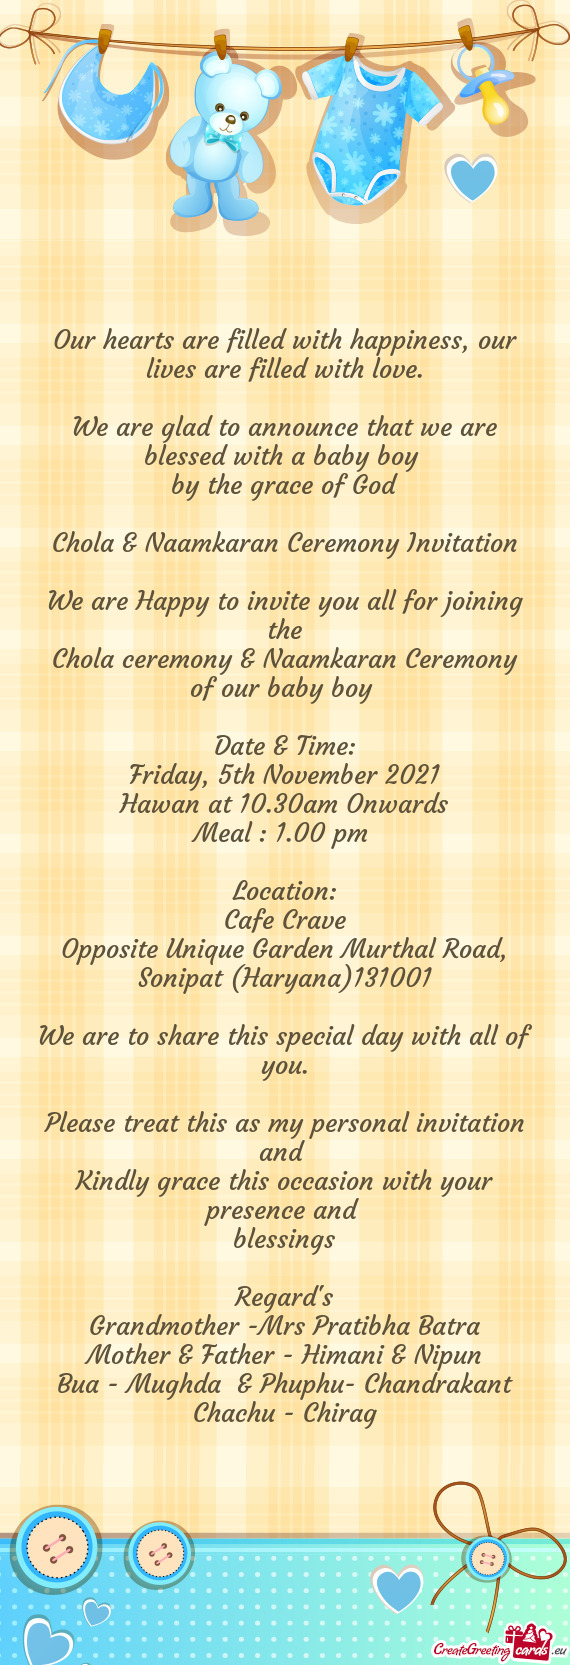 Chola ceremony & Naamkaran Ceremony of our baby boy